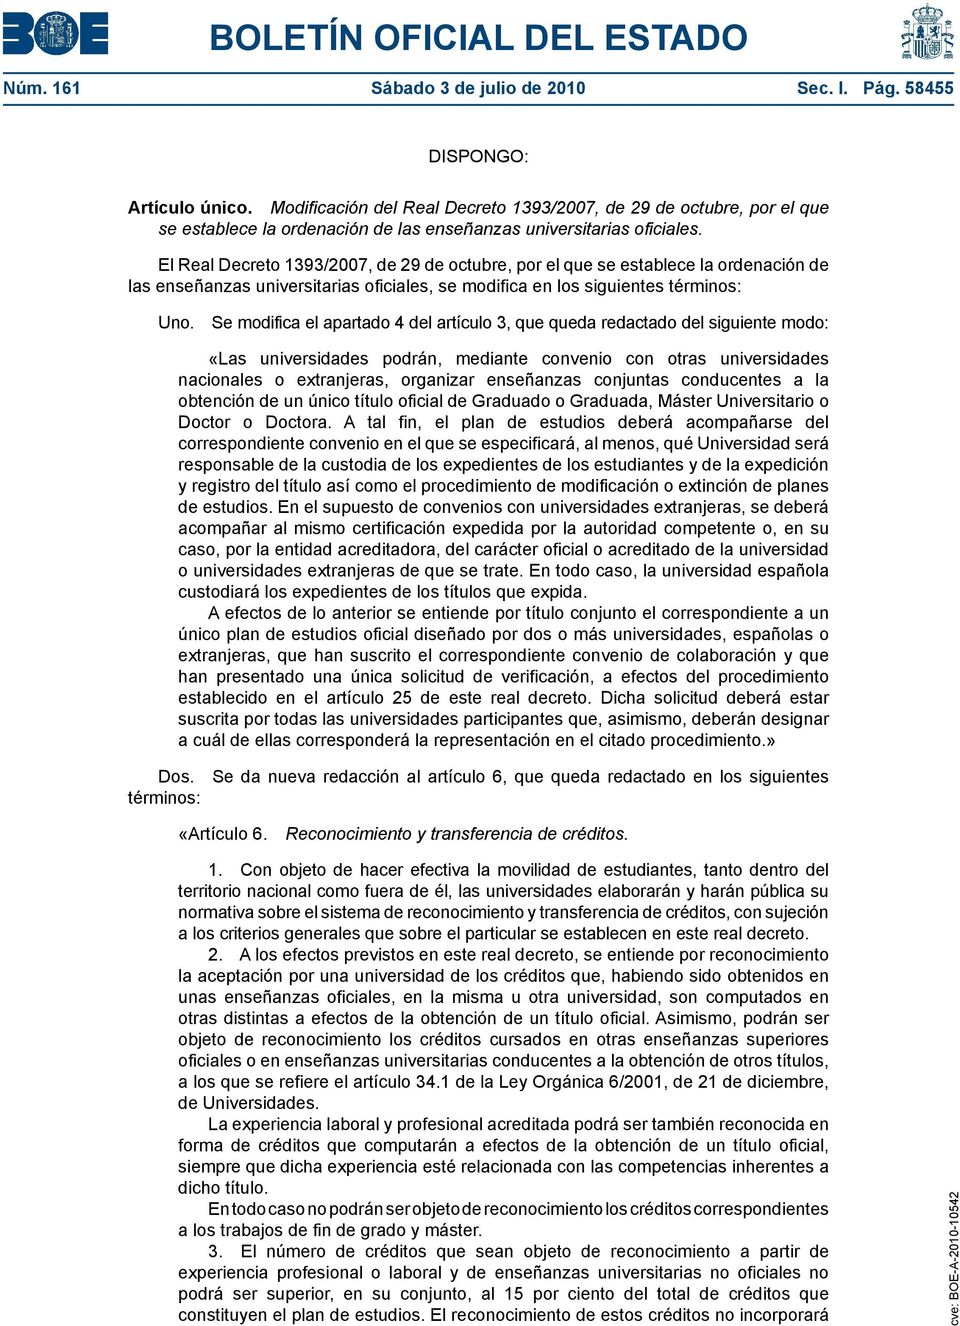 El Real Decreto 1393/2007, de 29 de octubre, por el que se establece la ordenación de las enseñanzas universitarias oficiales, se modifica en los siguientes términos: Uno.